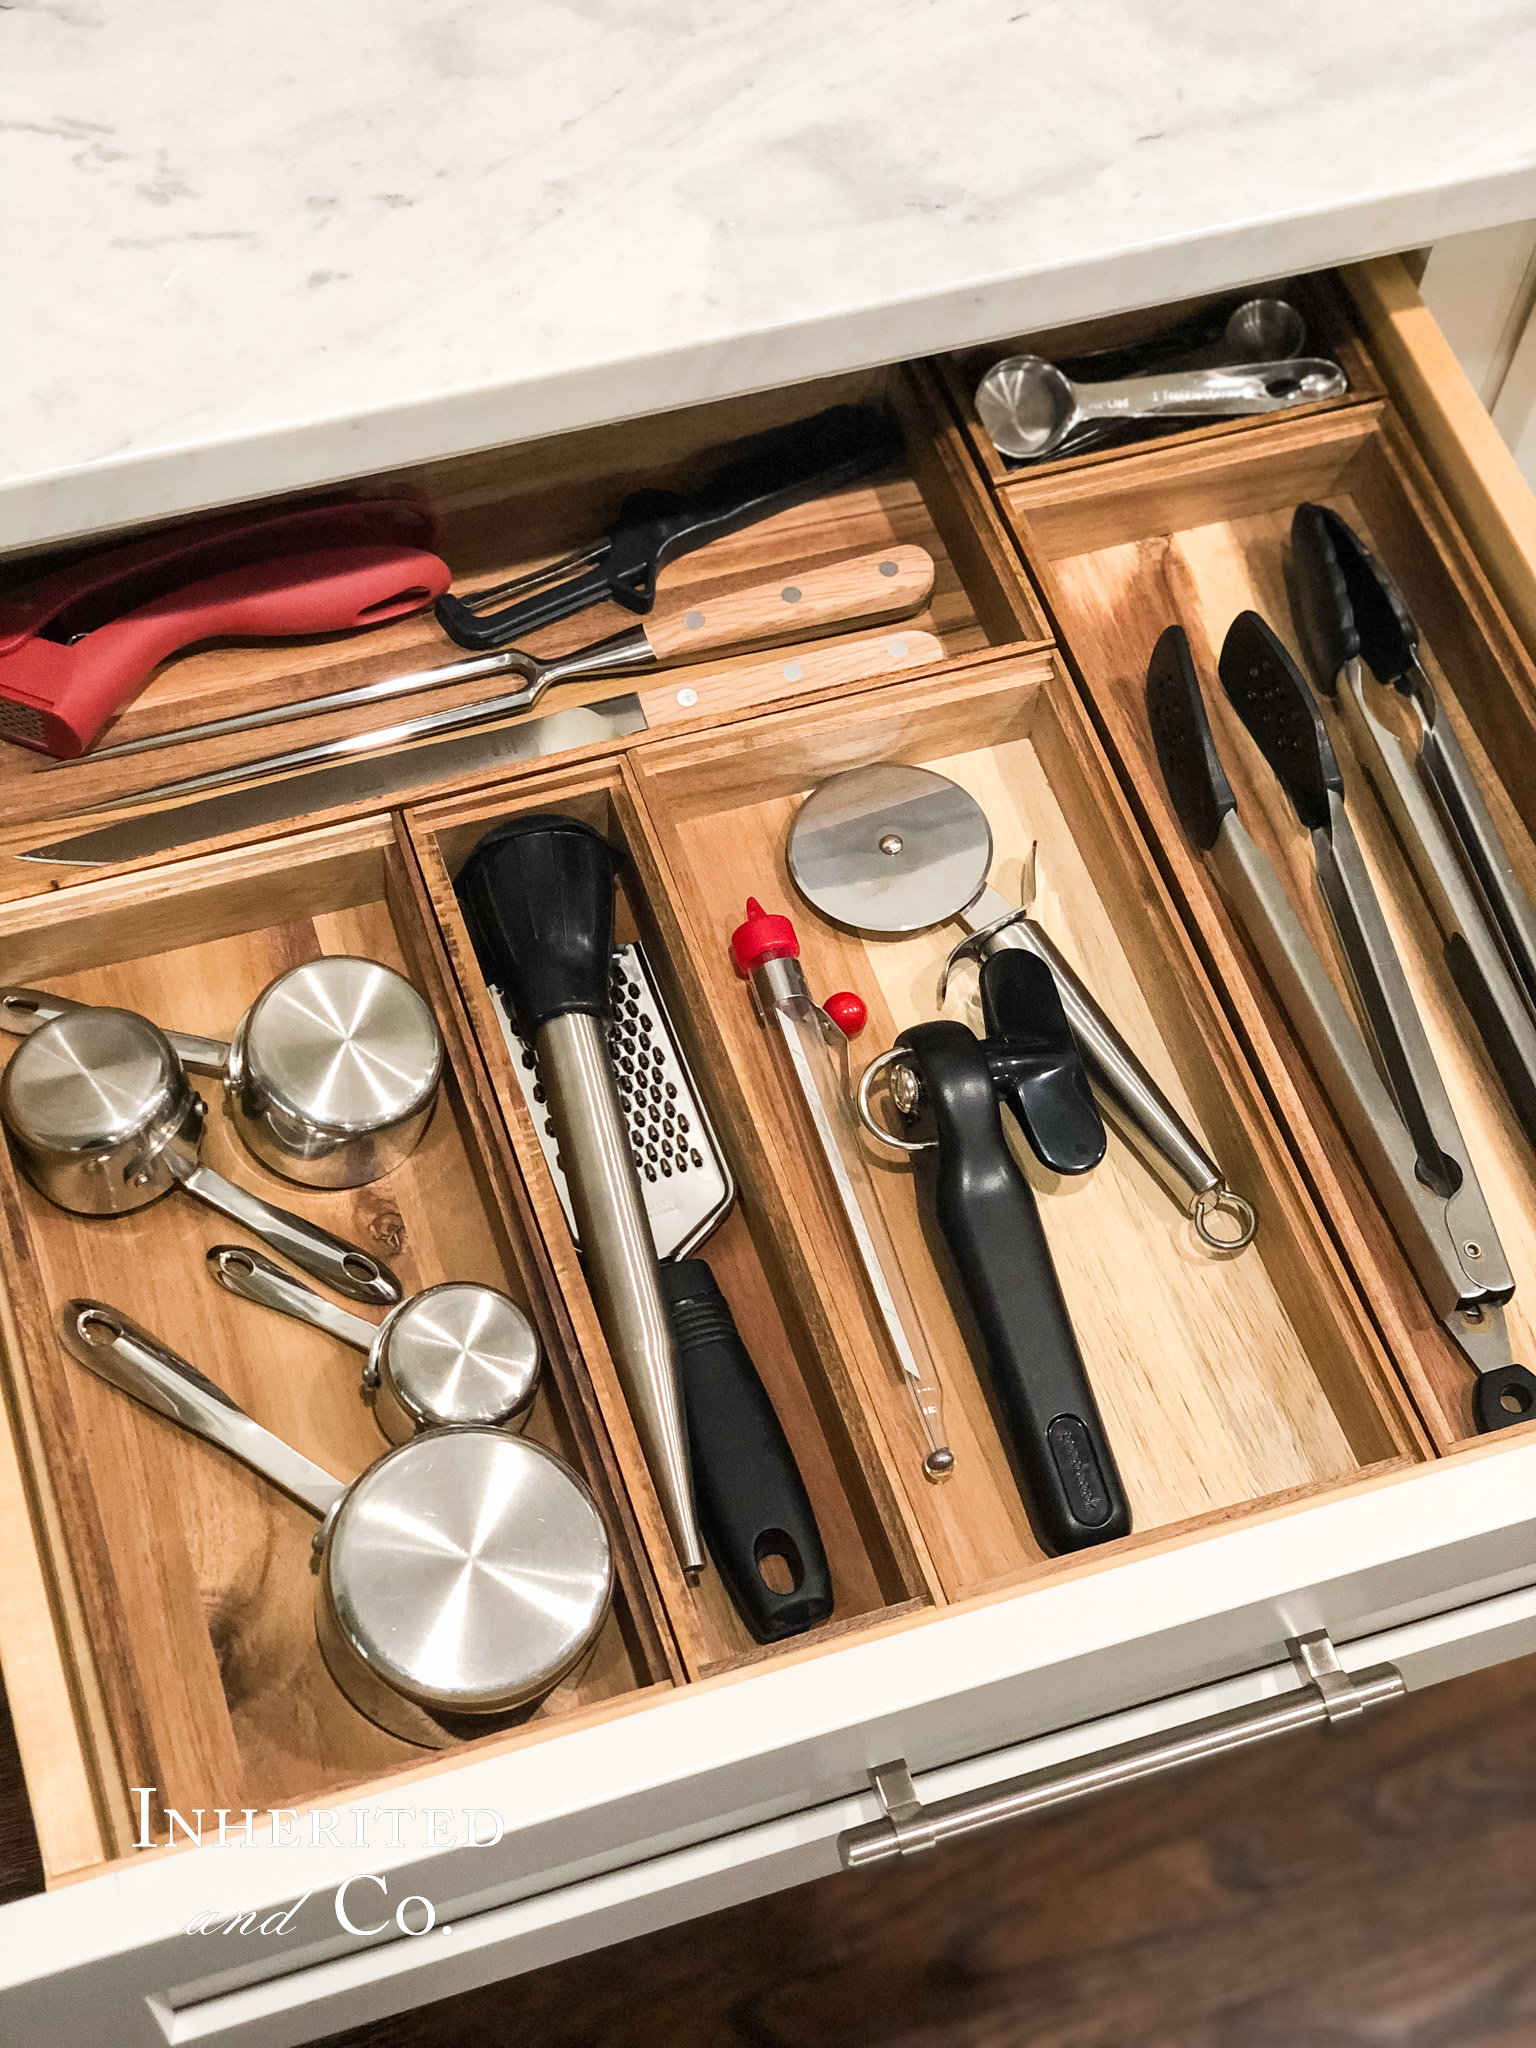 organized kitchen gadget drawer